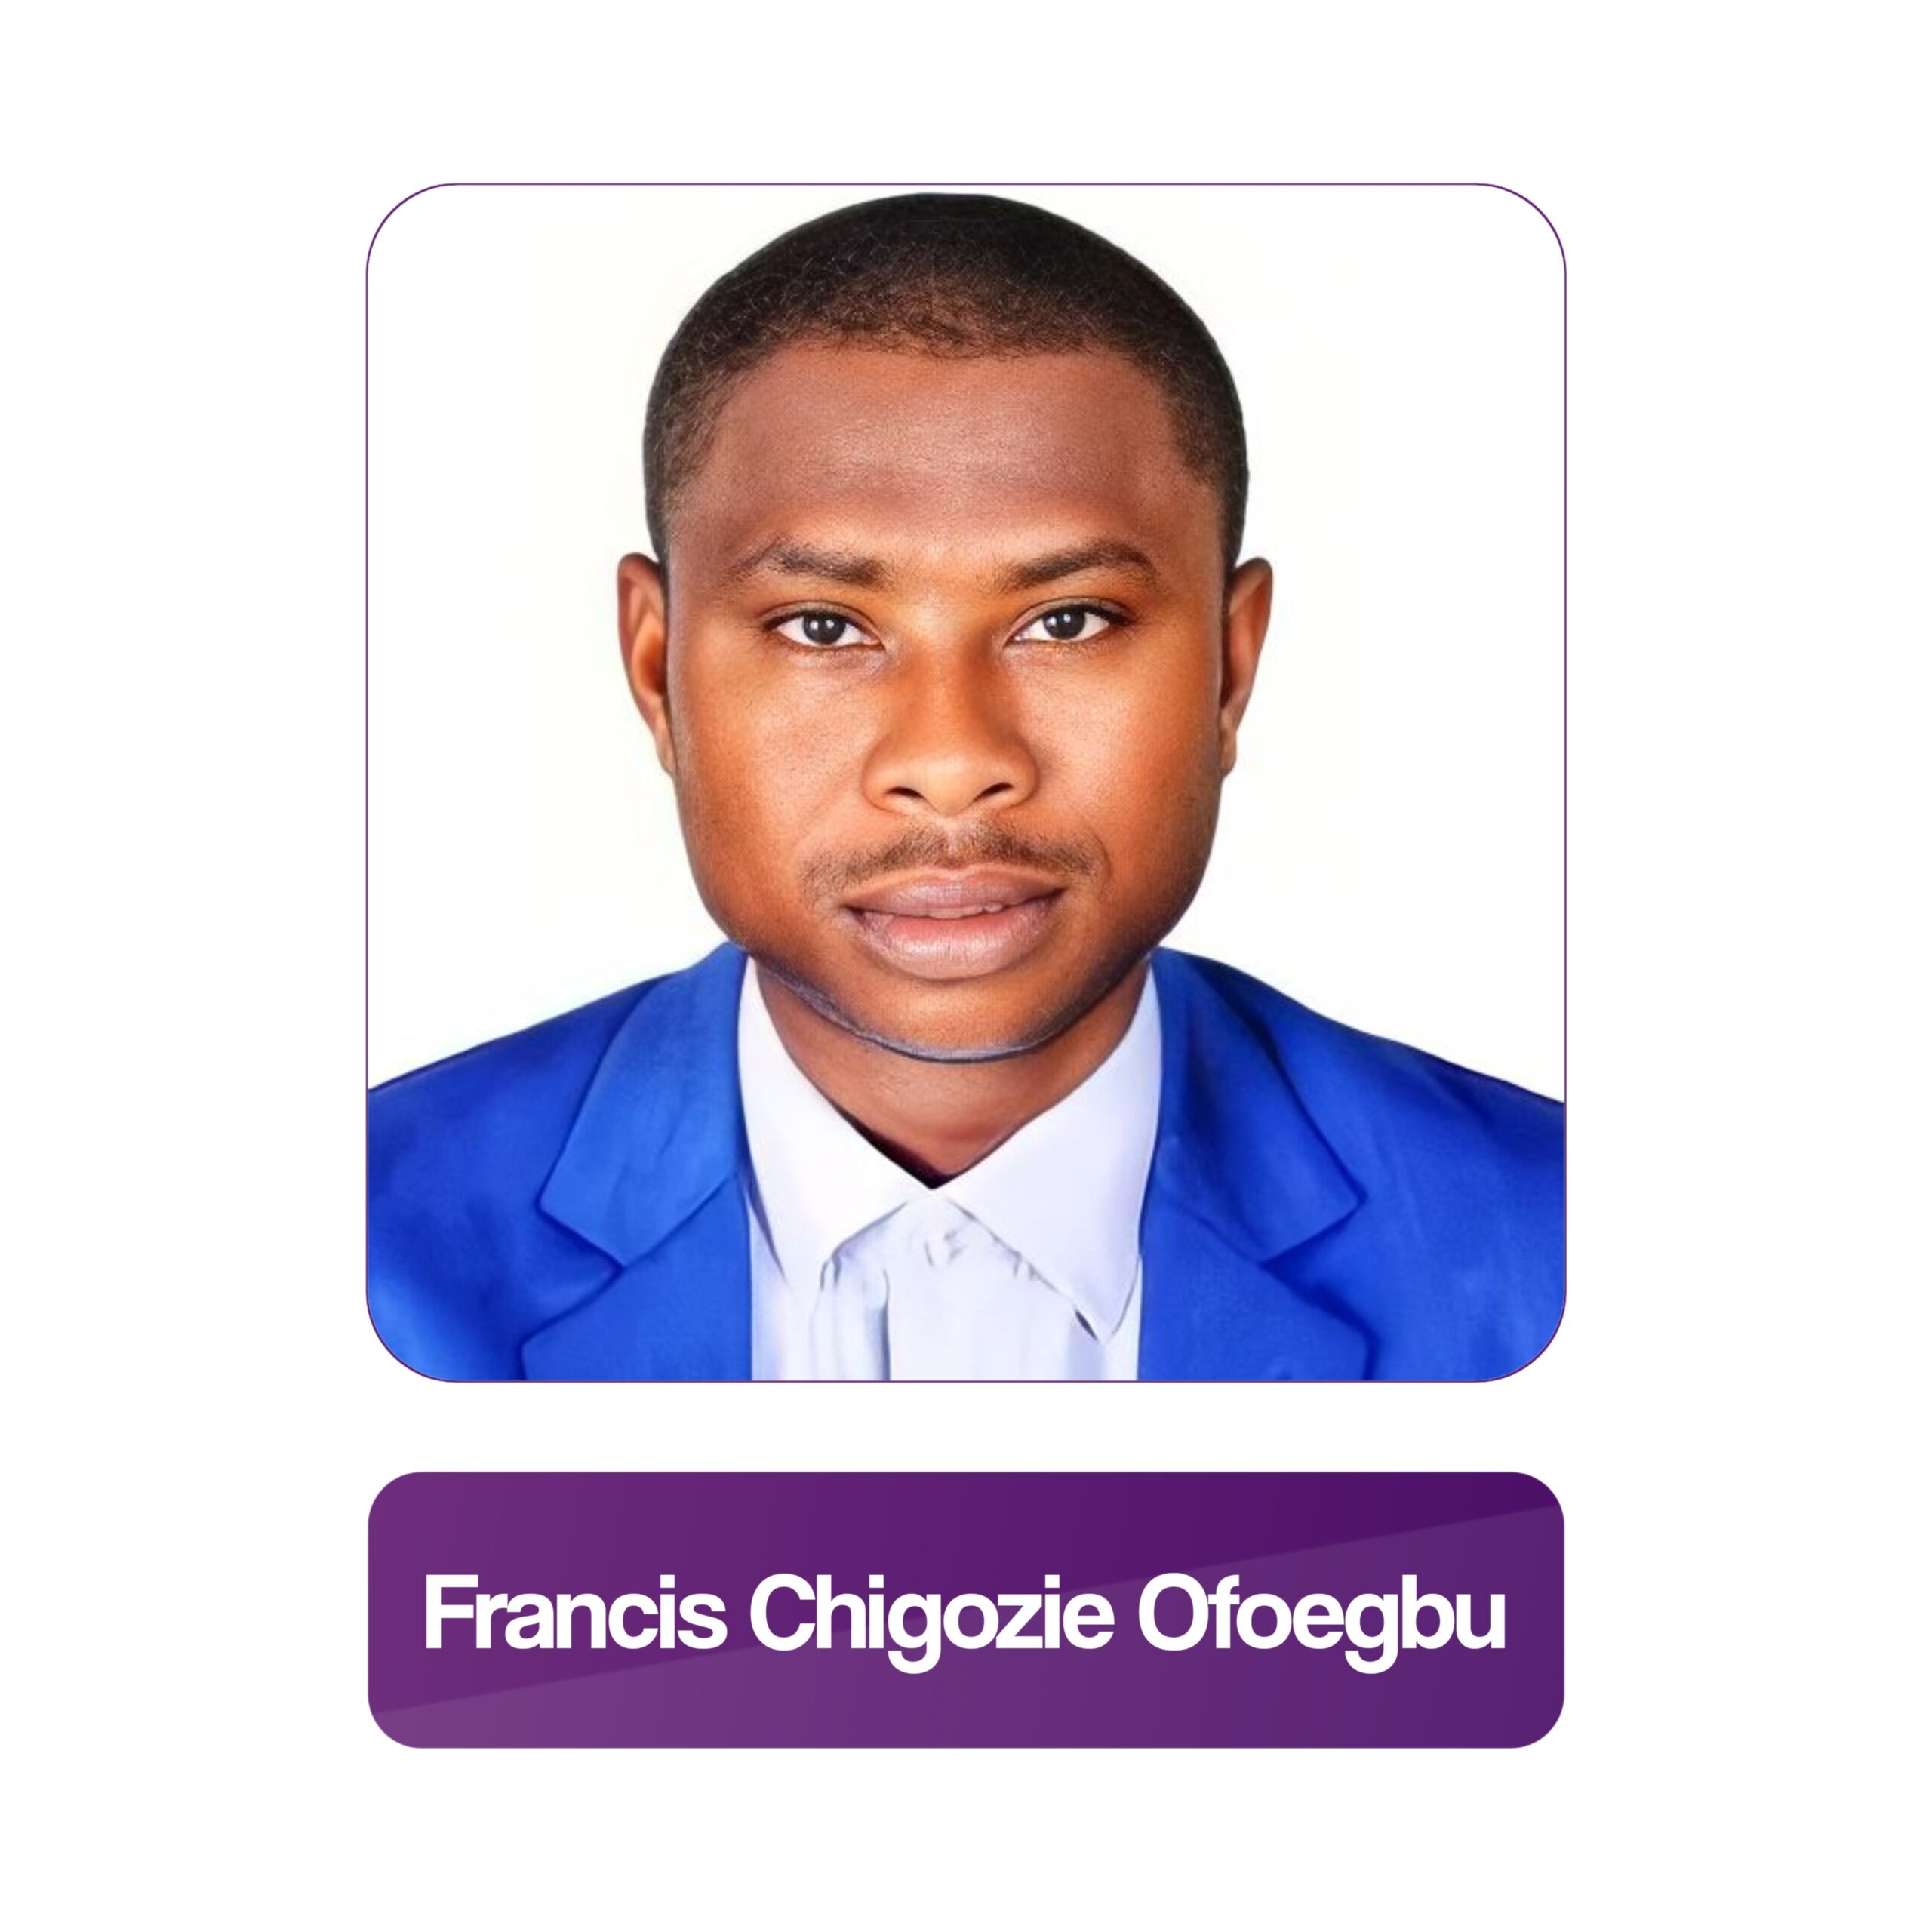 Francis Chigozie Ofoegbu